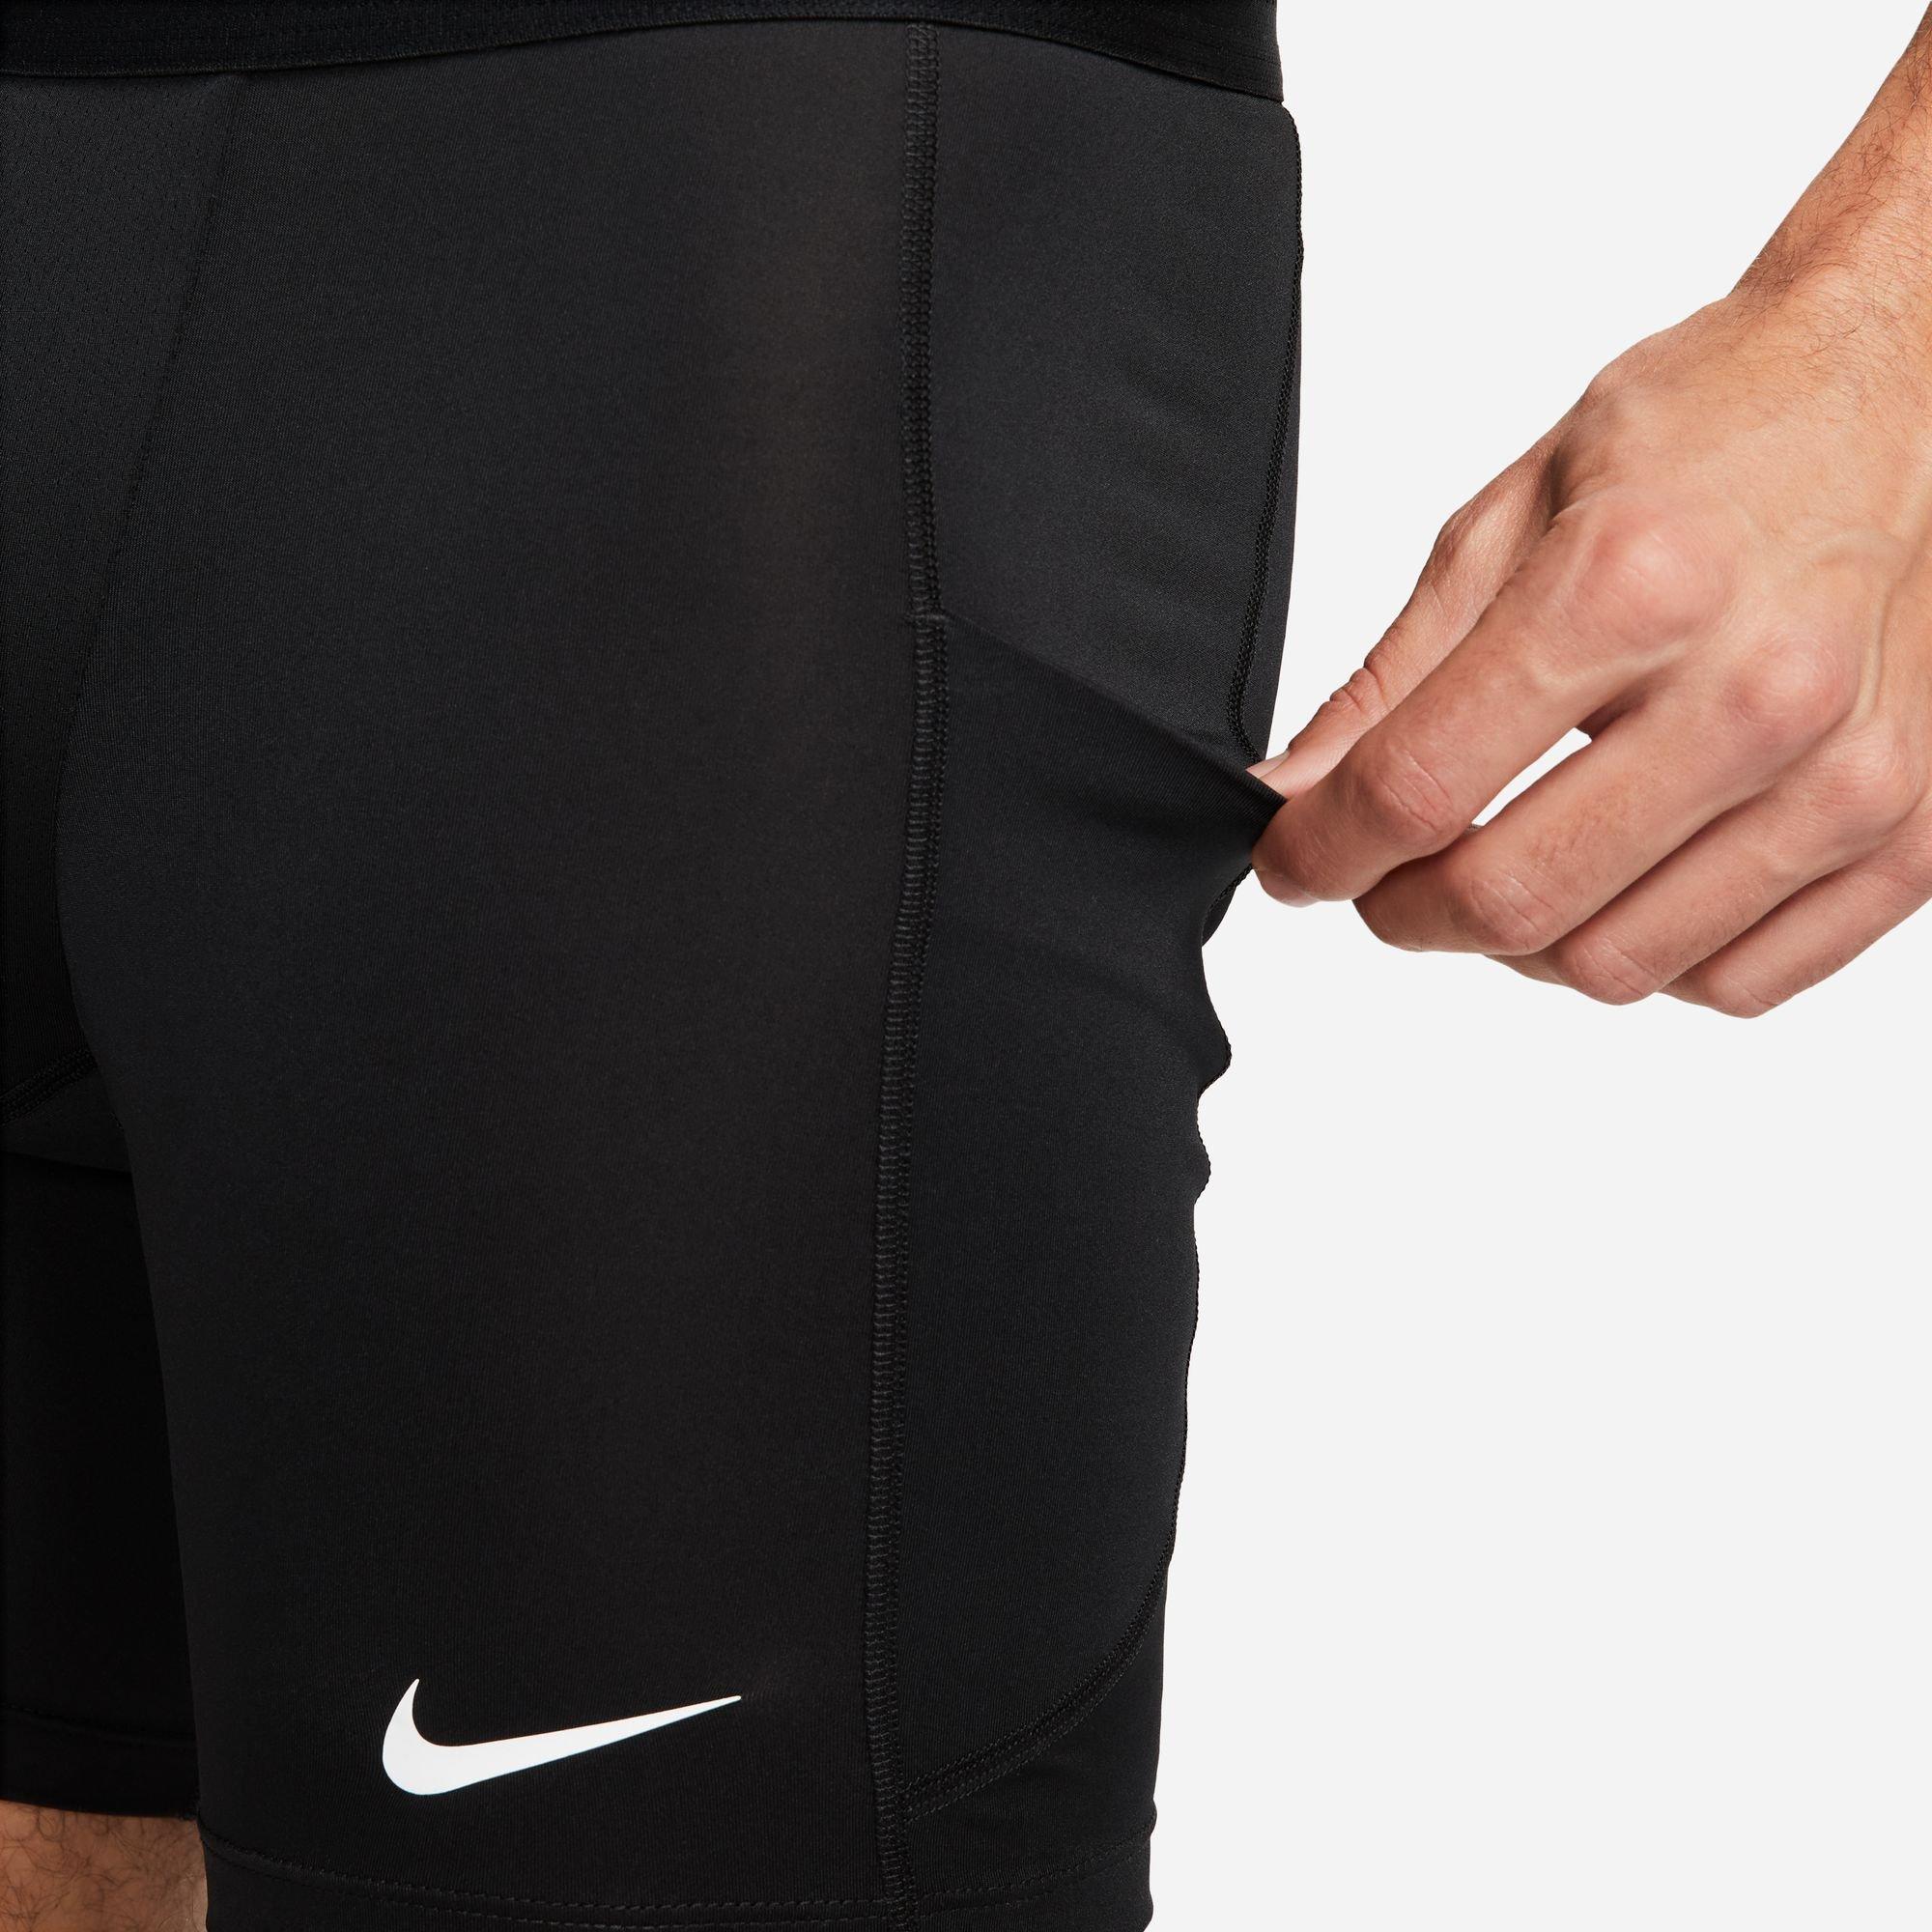 Men's Nike Pro Dri-FIT Large Swoosh Compression Shorts